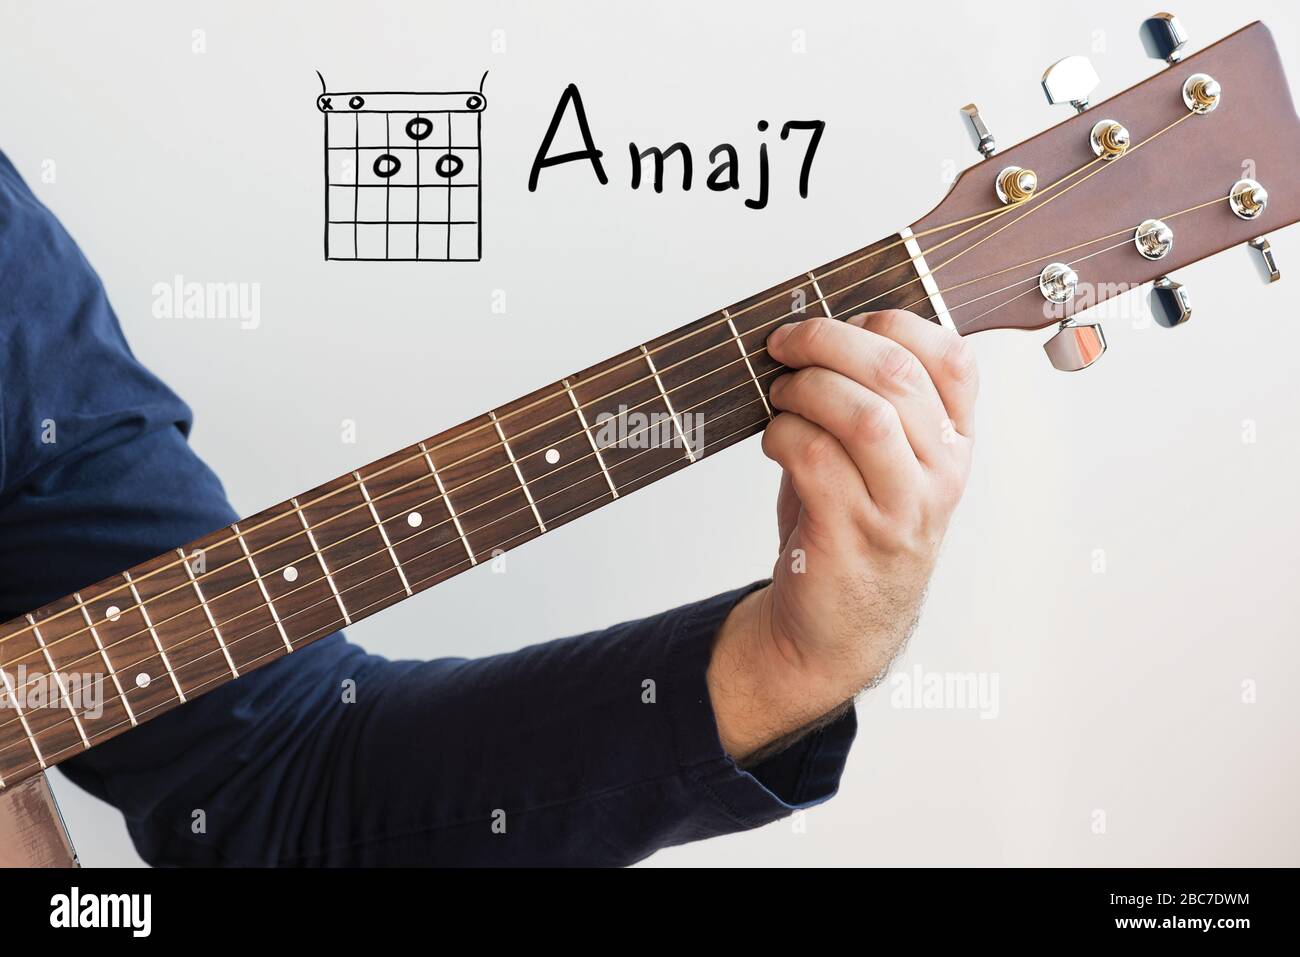 Gitarre lernen - Mann in einem dunkelblauen Hemd, das Gitarrenakkorde auf dem Whiteboard spielt, Akord A-Major 7 Stockfoto